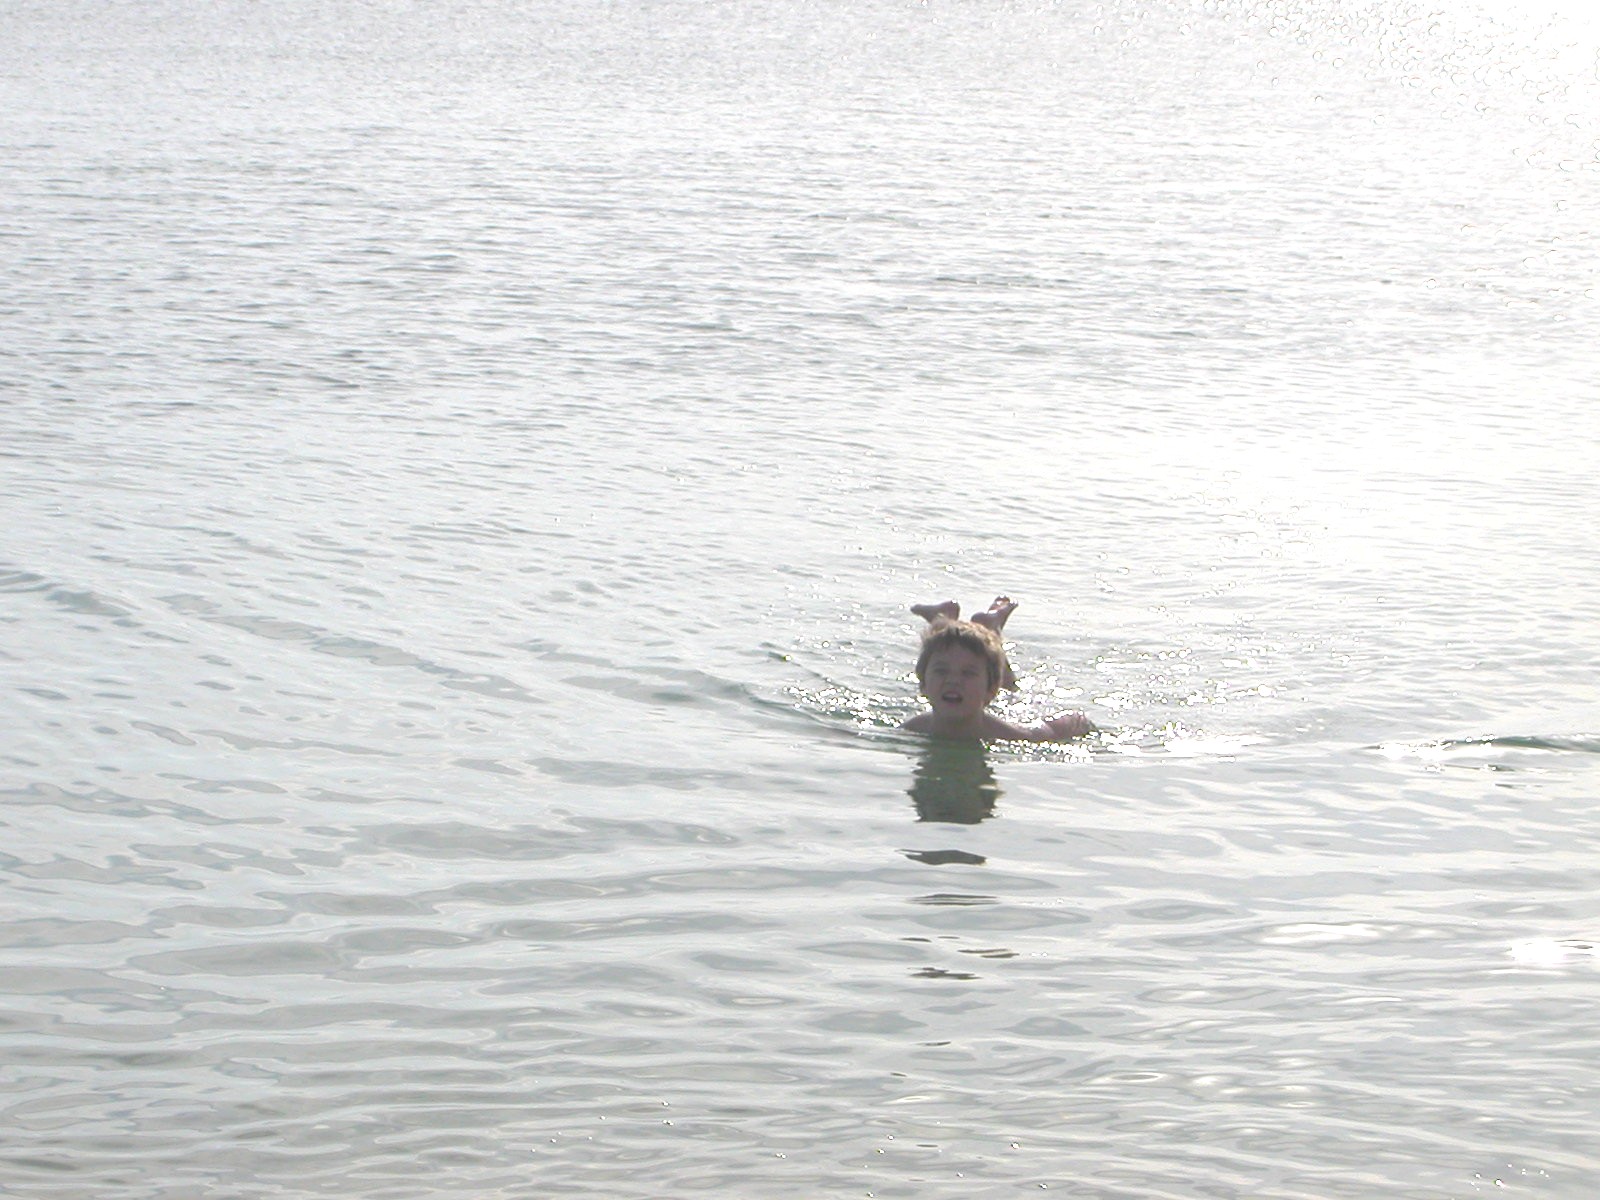 Swimming in the Dead Sea.